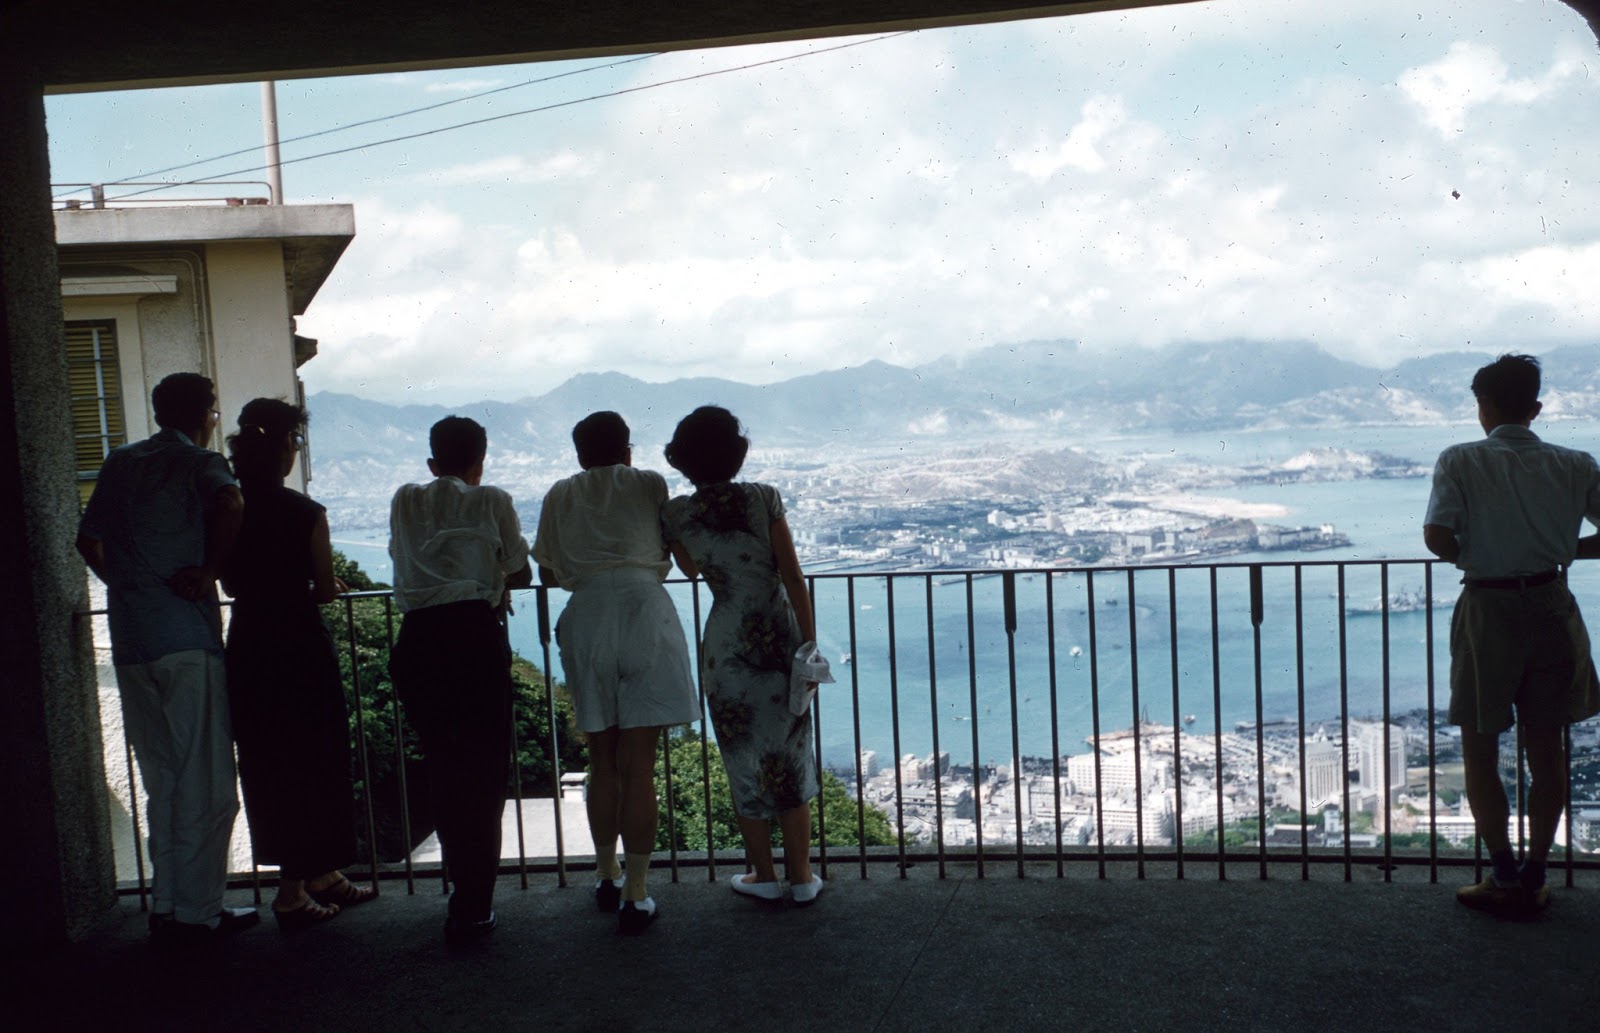 hong kong photographs 1950s